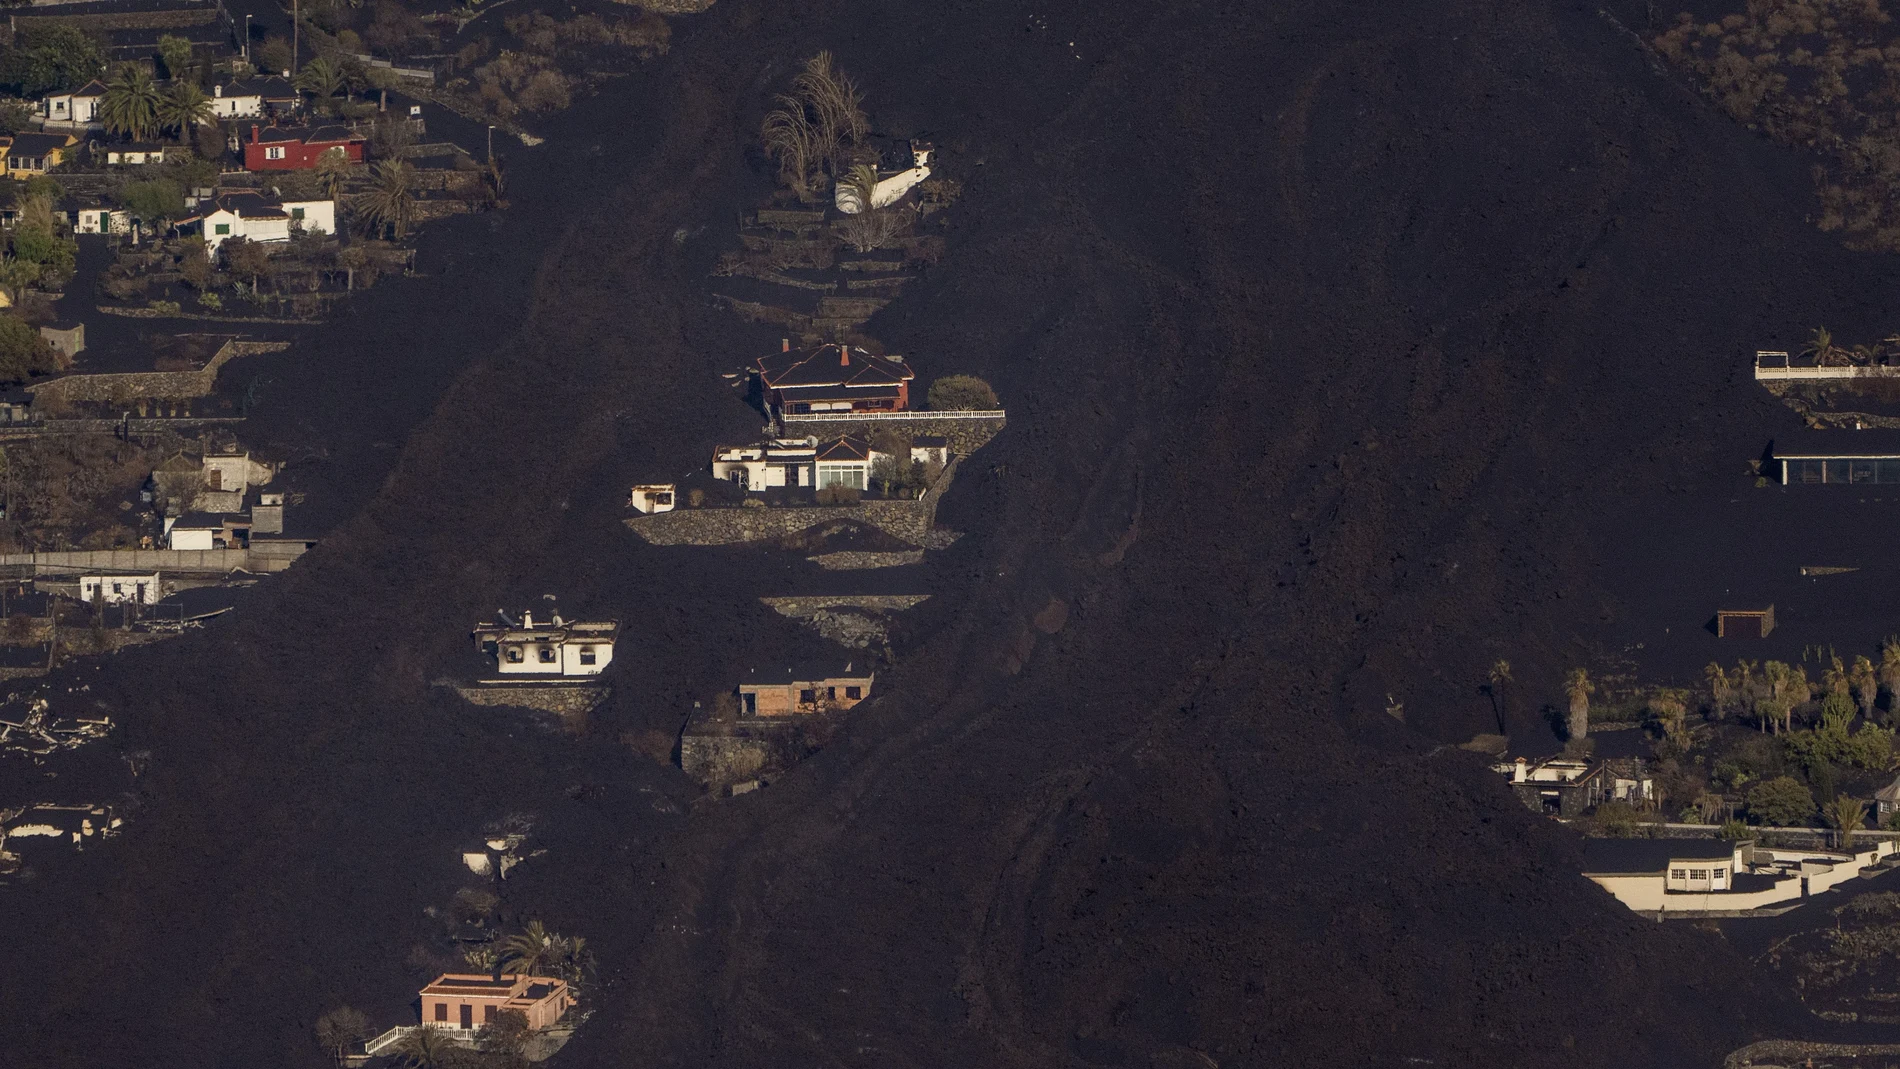 La lava ha engullido numerosas casas en su camino hacia el mar en La Palma, mientras que otras han conseguido salvarse.